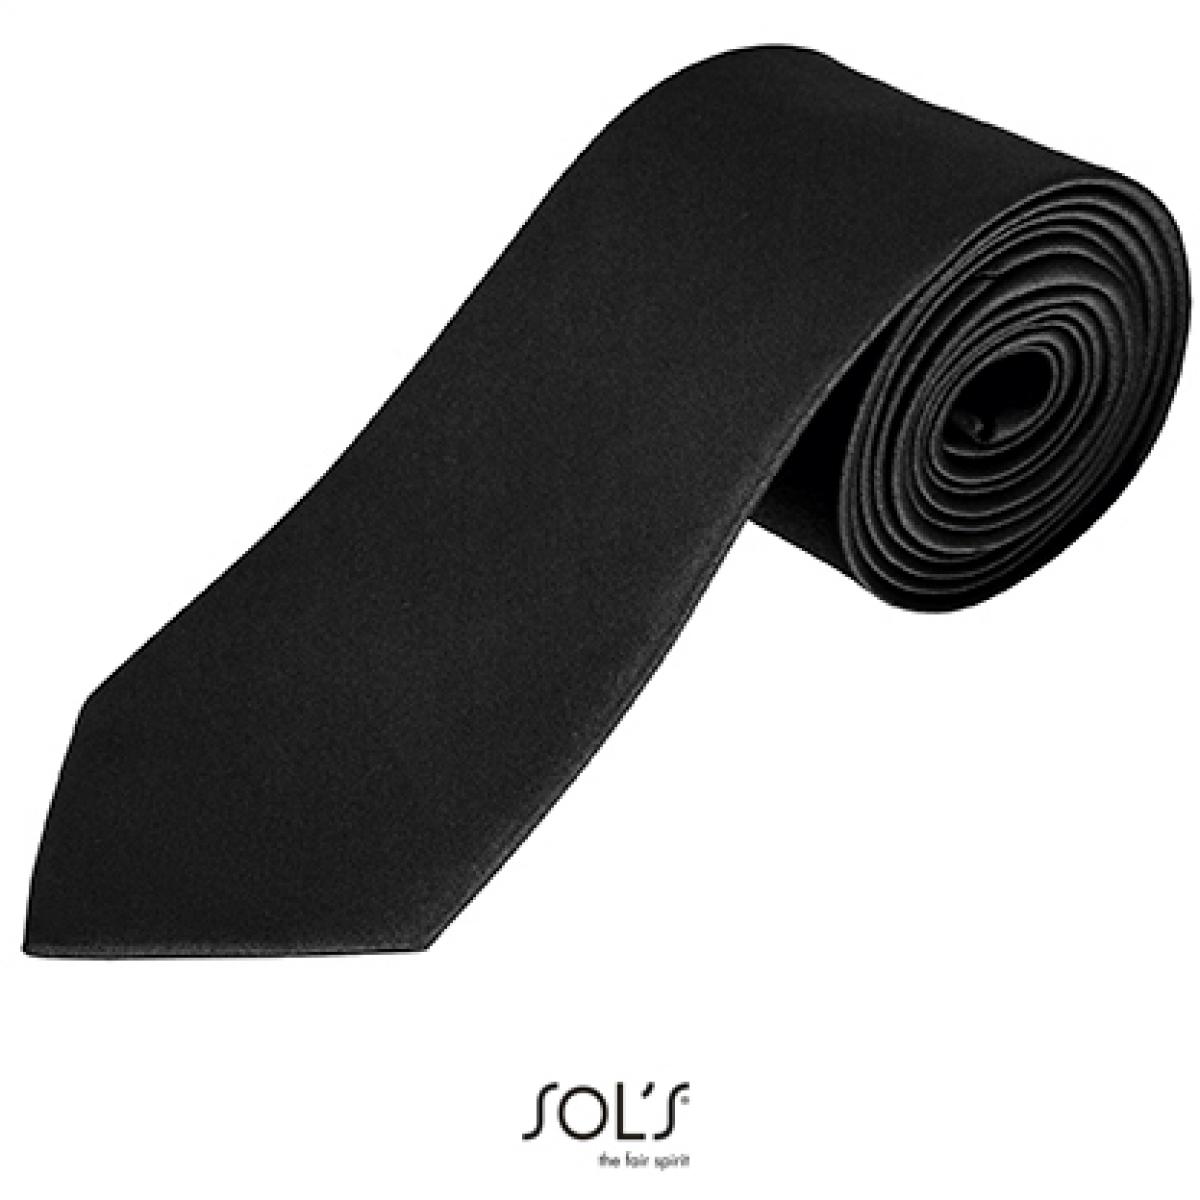 Hersteller: SOLs Herstellernummer: 02932 Artikelbezeichnung: Herren Krawatte Garner Tie - Länge: 150 cm, Breite: 7 cm" Farbe: Black